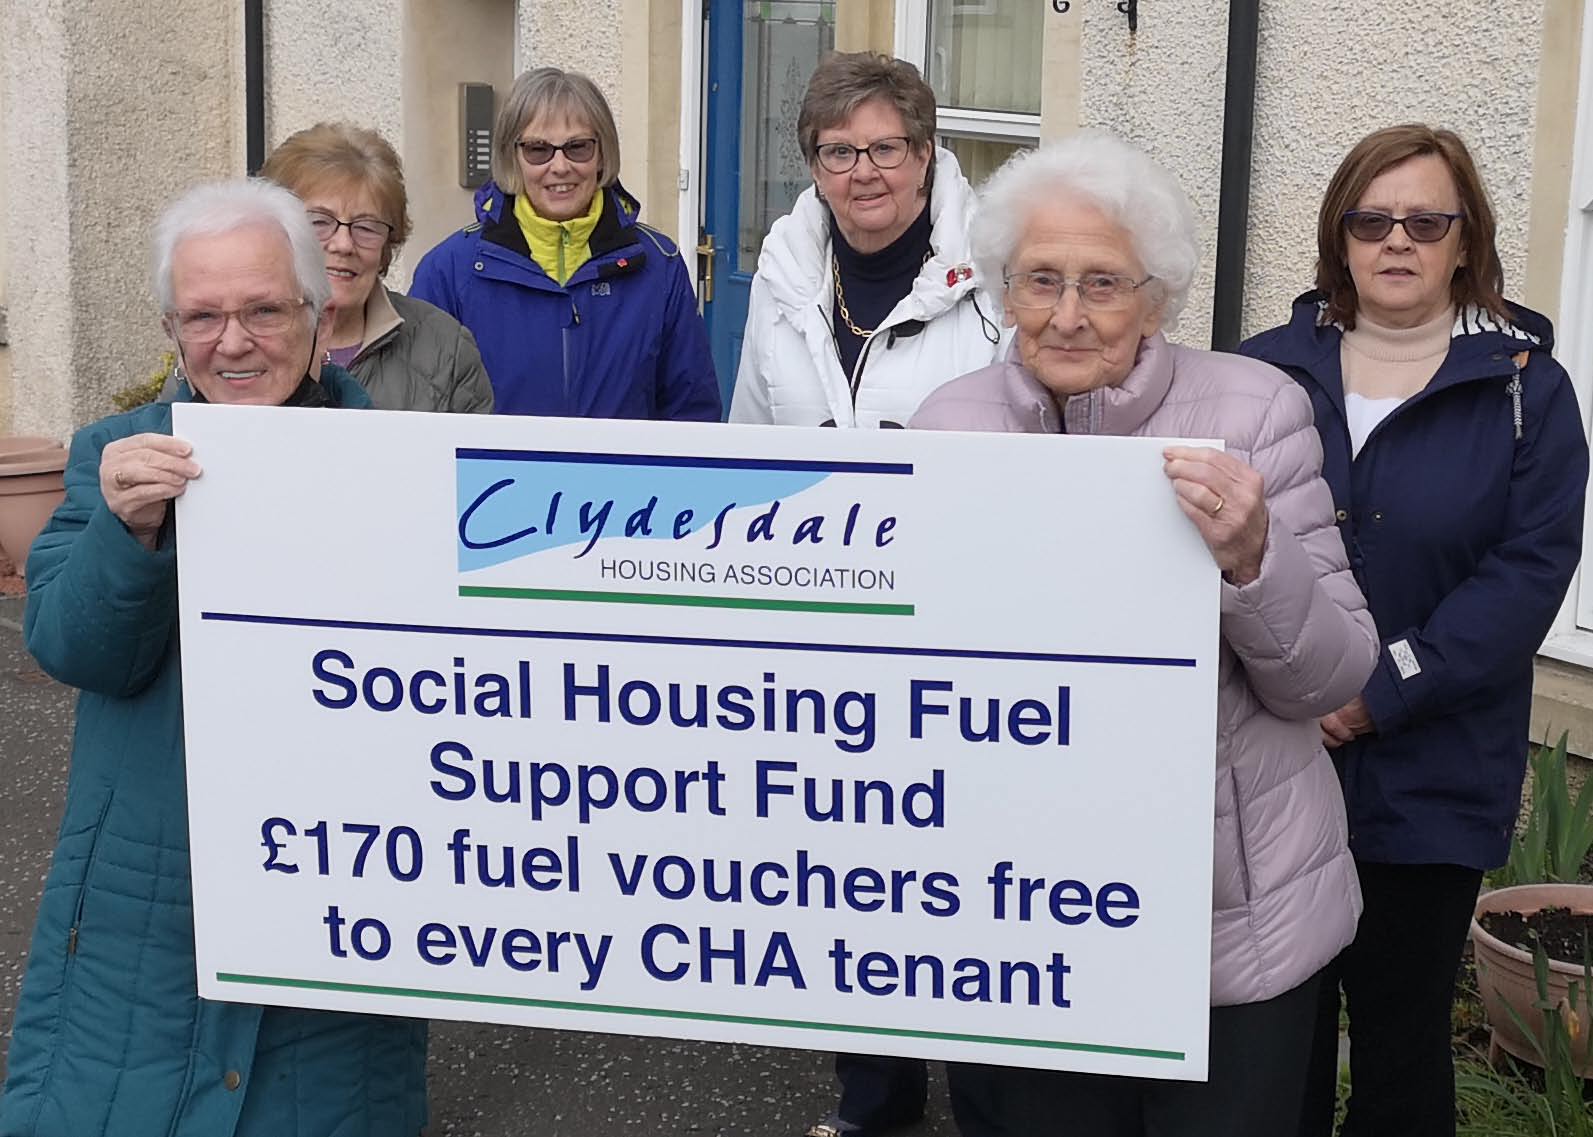 Clydesdale Housing Association tenants receive £170 fuel vouchers